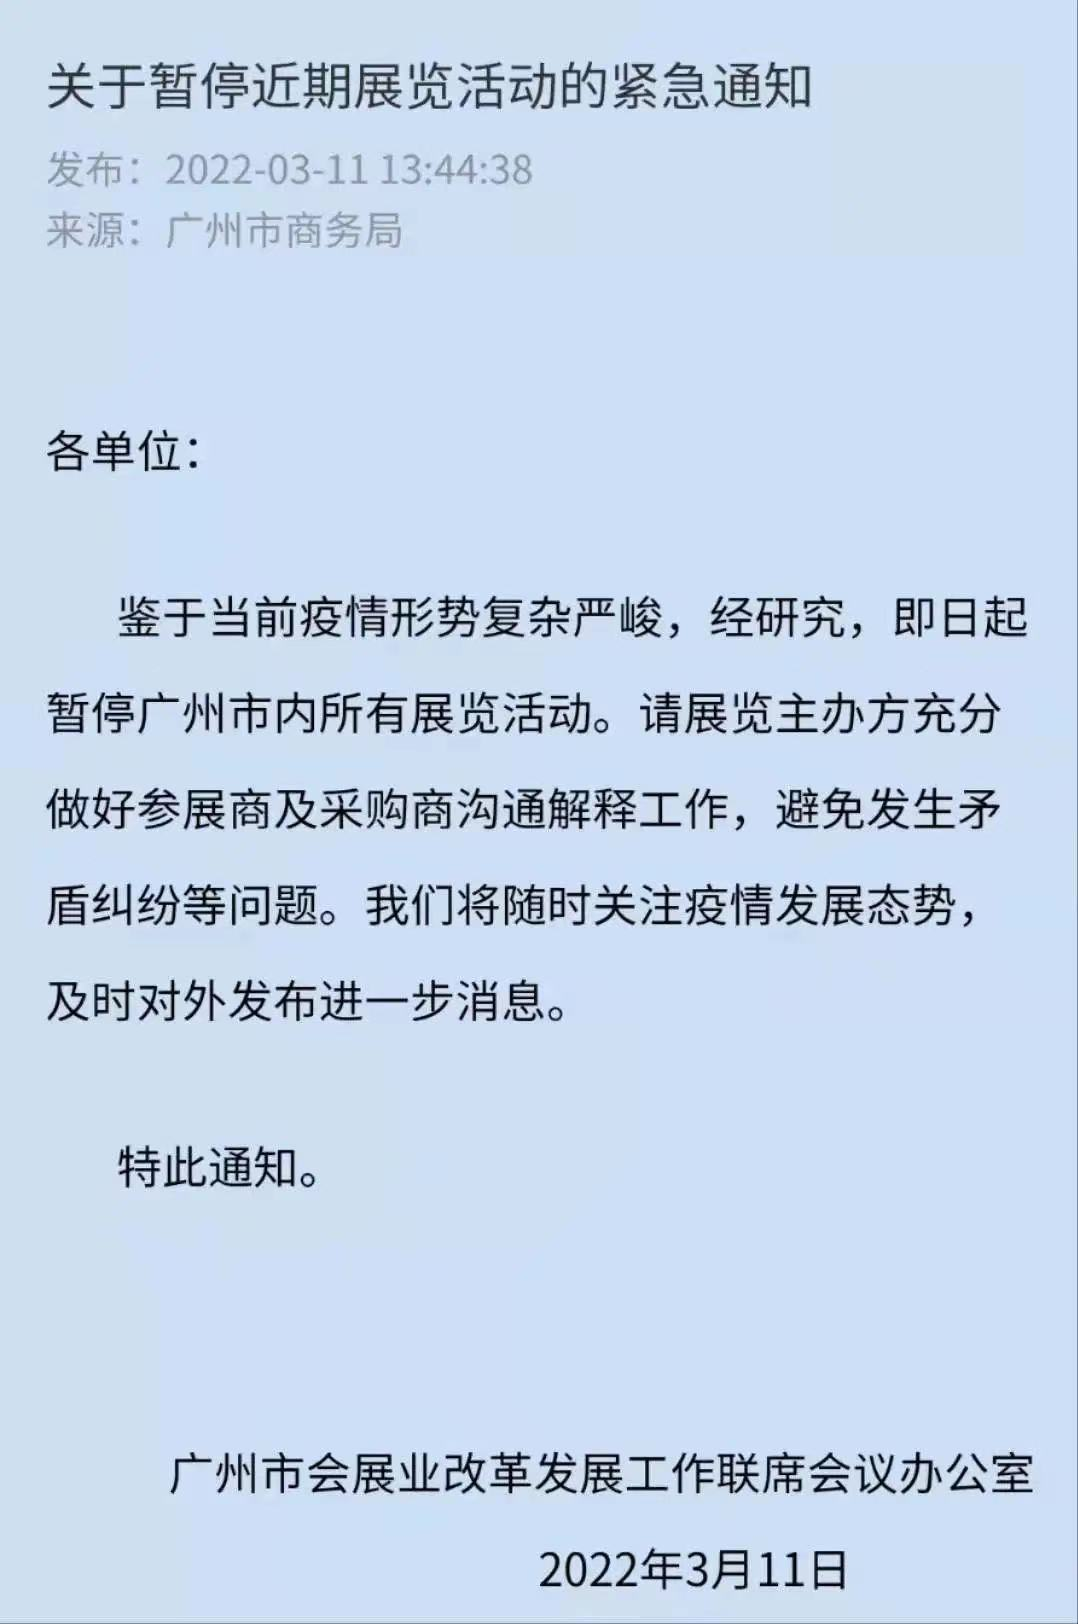 紧急通知！广州暂停所有展会 紧急临时封闭广交会展馆